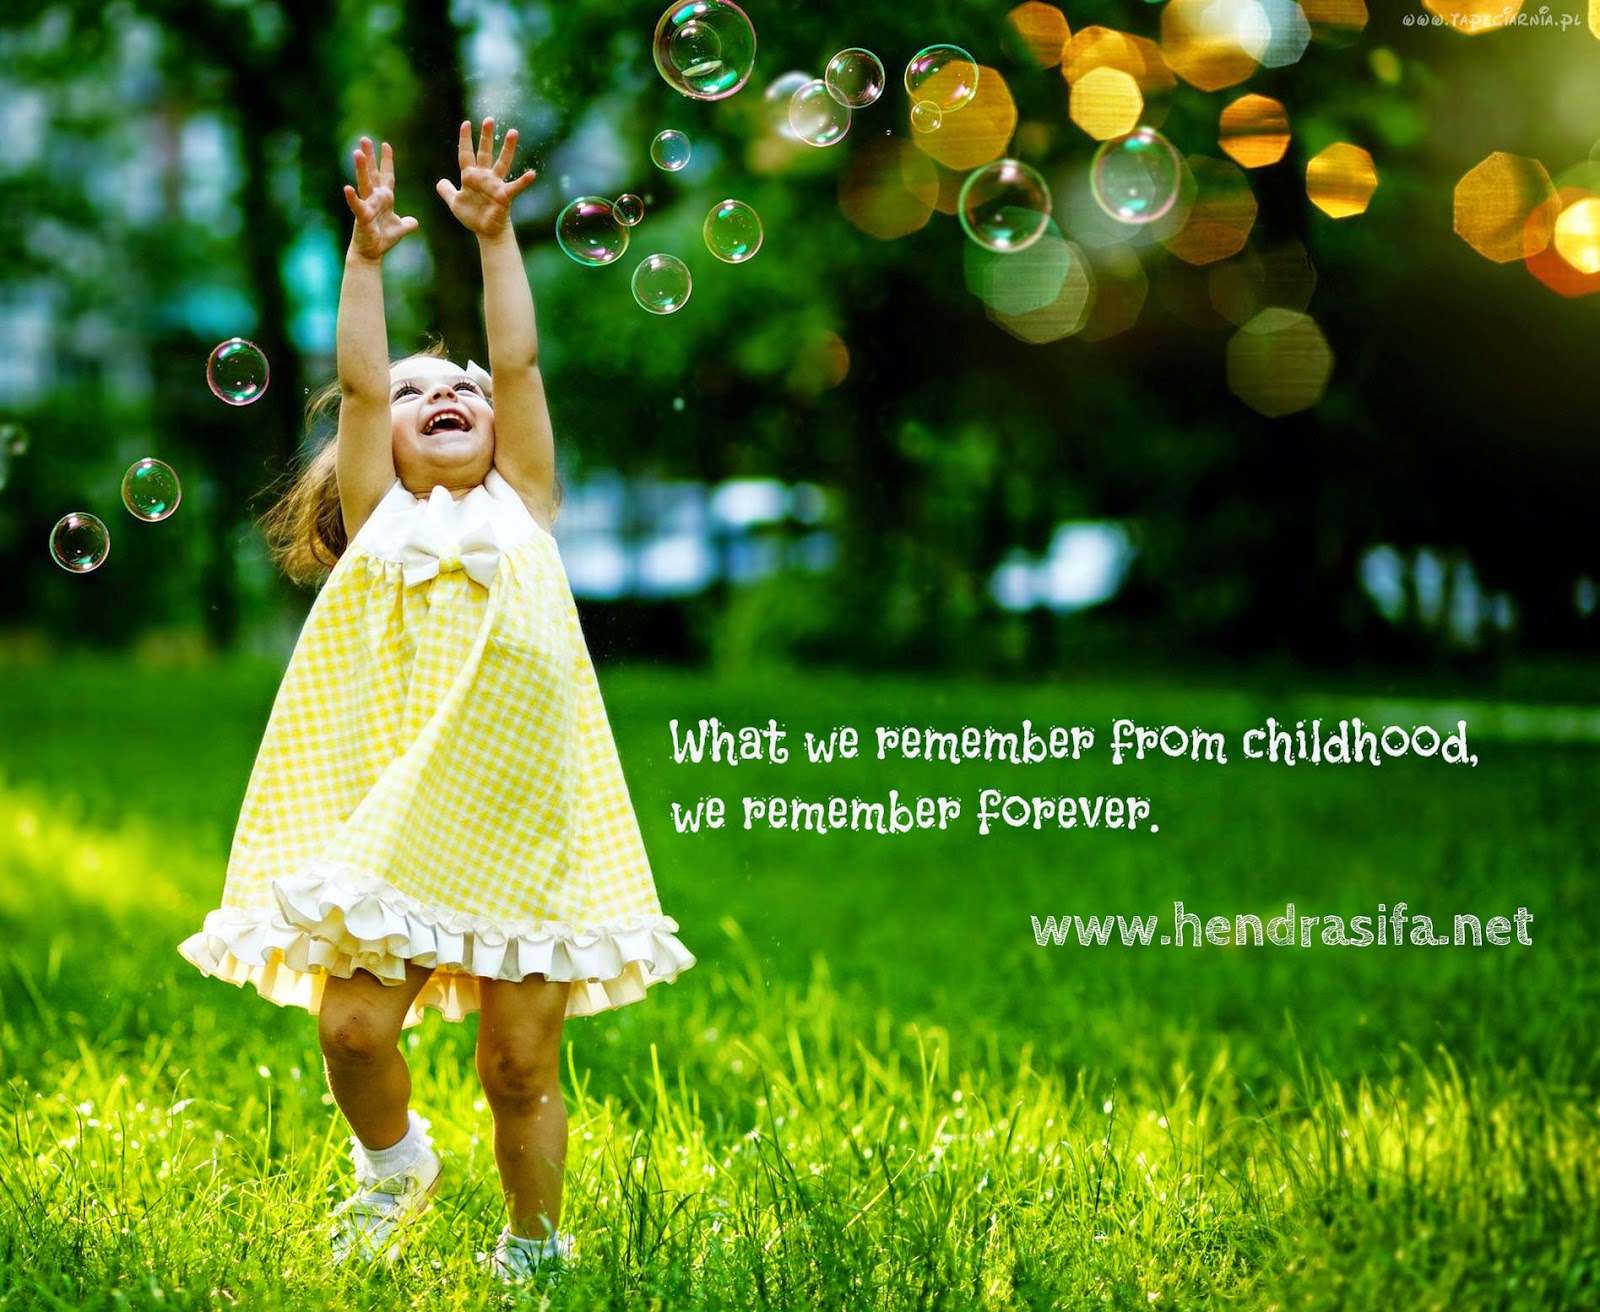 Как воспитать счастливого ребенка: Дети наши ангелы и источник радости